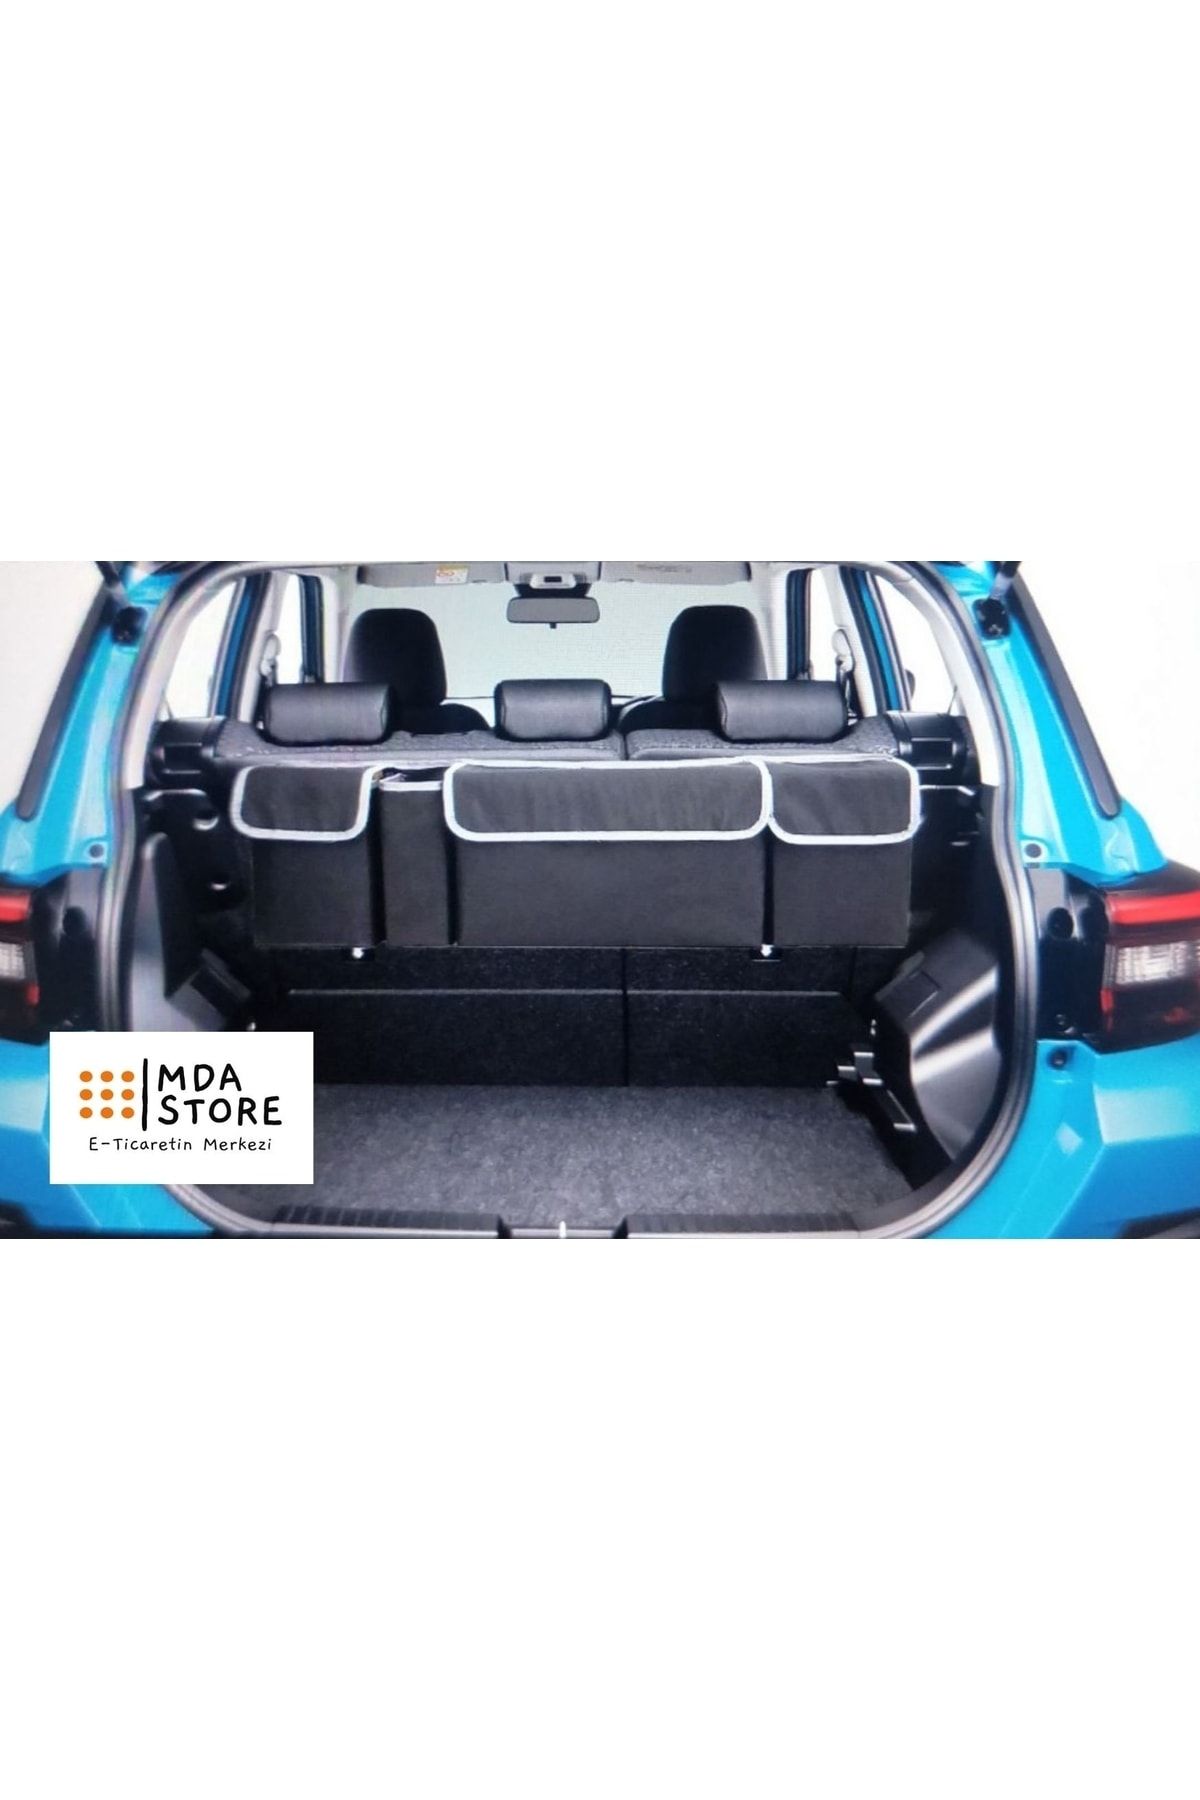 Arnee Vehicle Luggage Bag Car In-Vehicle Luggage Organizer Vehicle Luggage  Organizer Auto Storage Tool Bag